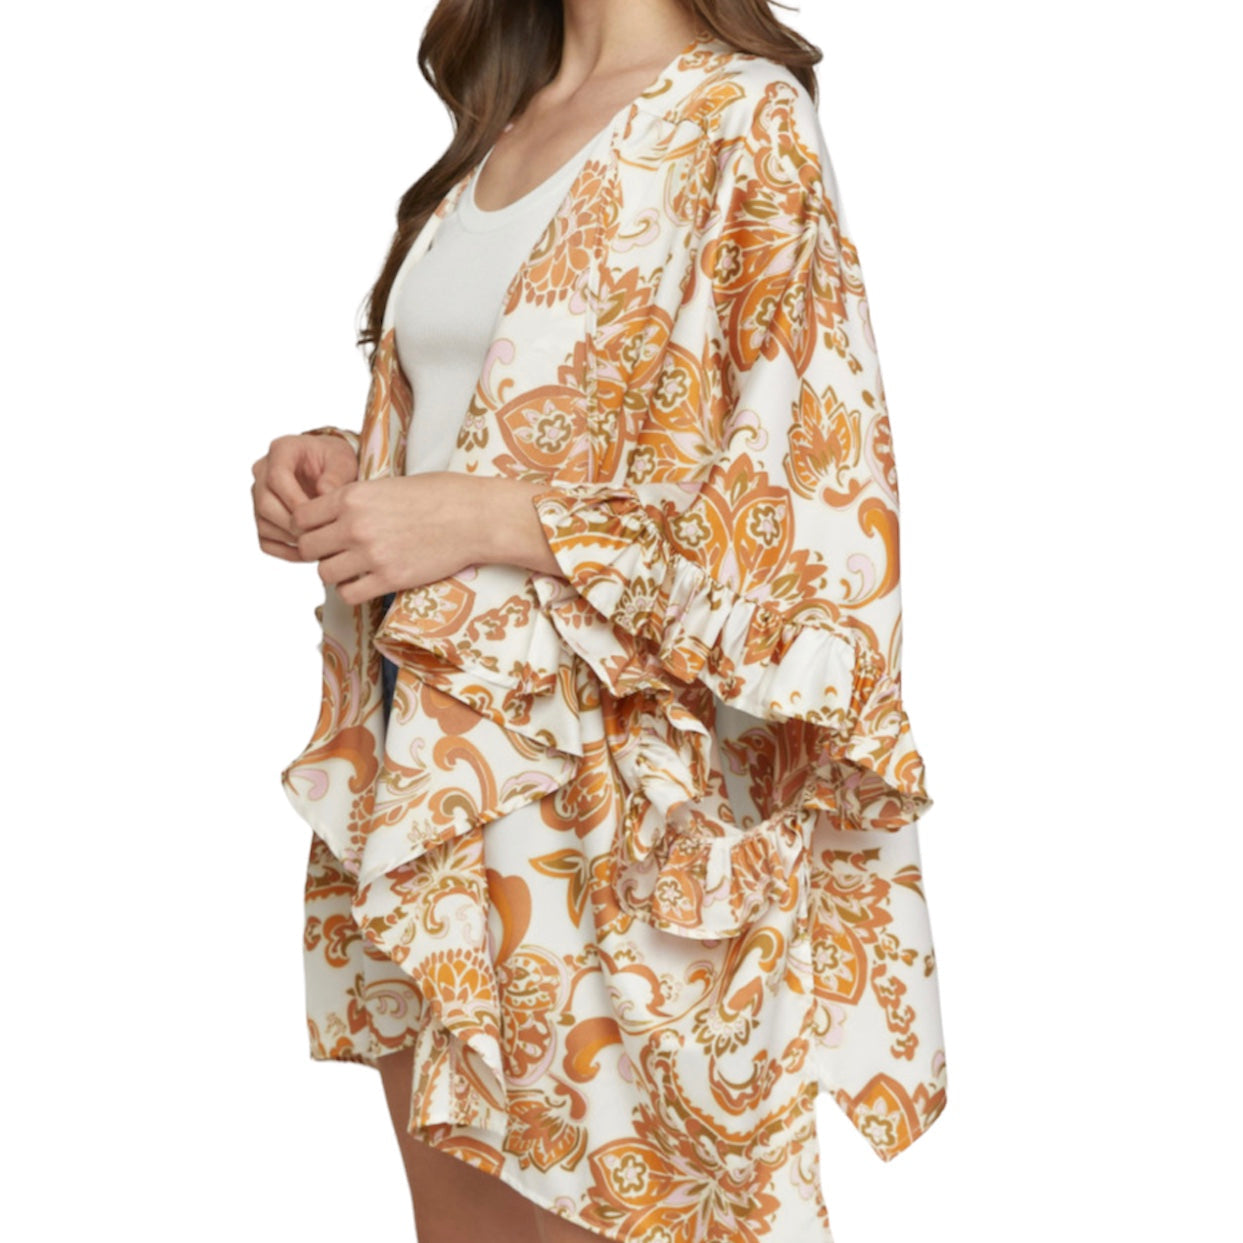 Glamco Boutique  Kimono Duster , Kimono One Size New ! Sandrine Printed Satin Kimono in Apricot / Rust